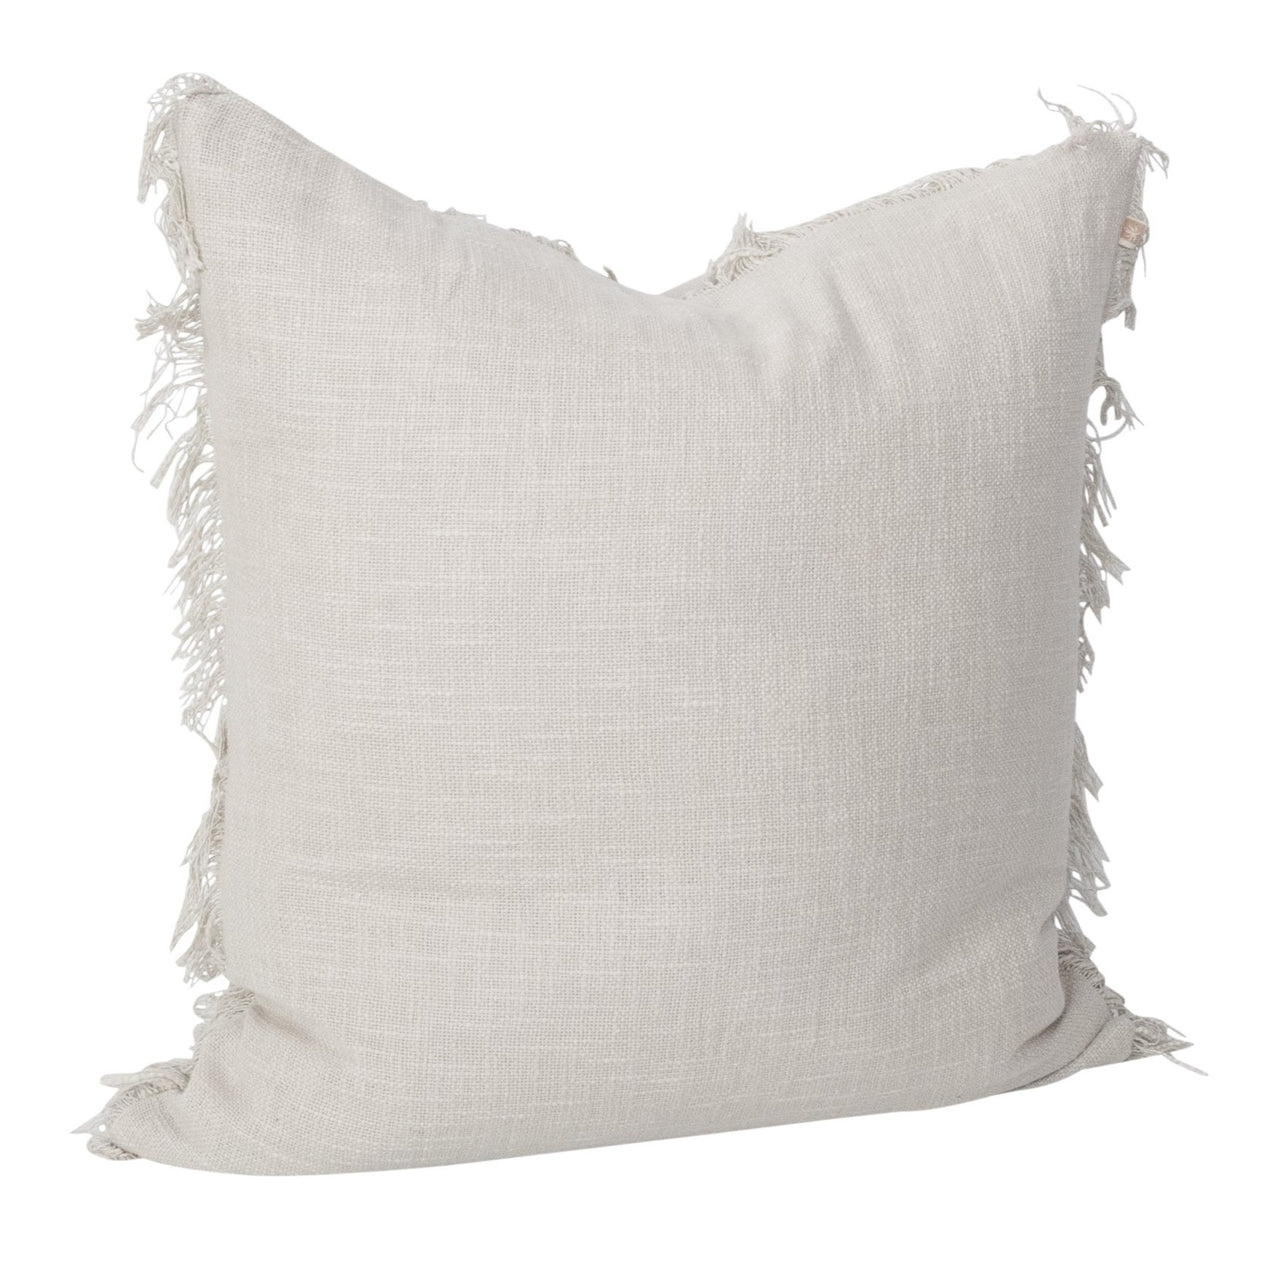 Harmony Cushion- Linen